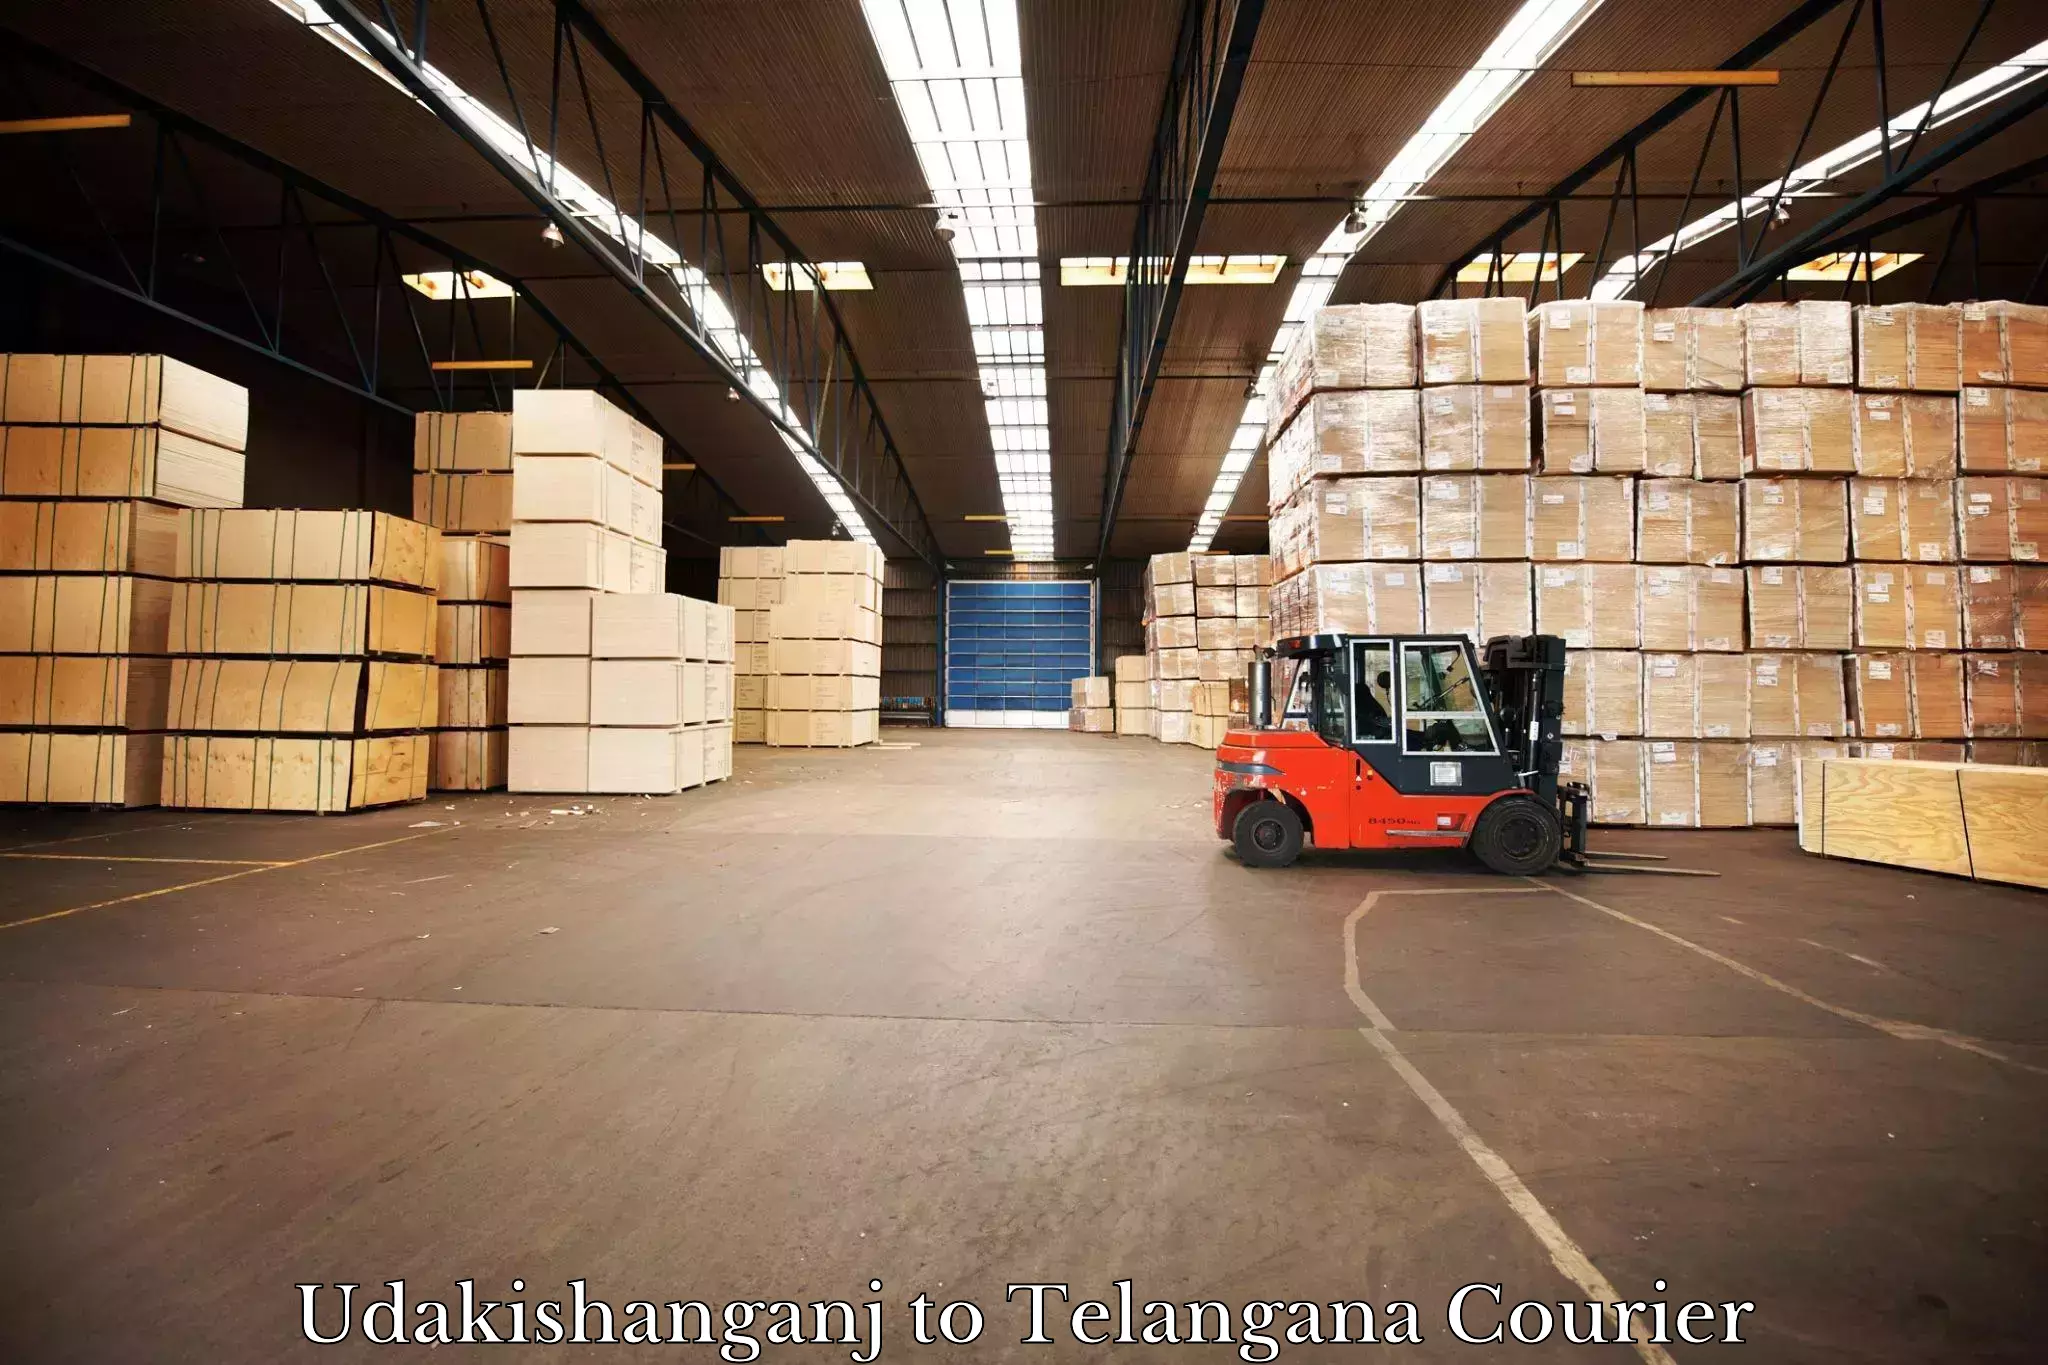 Door-to-door freight service Udakishanganj to Professor Jayashankar Telangana State Agricultural University Hyderabad